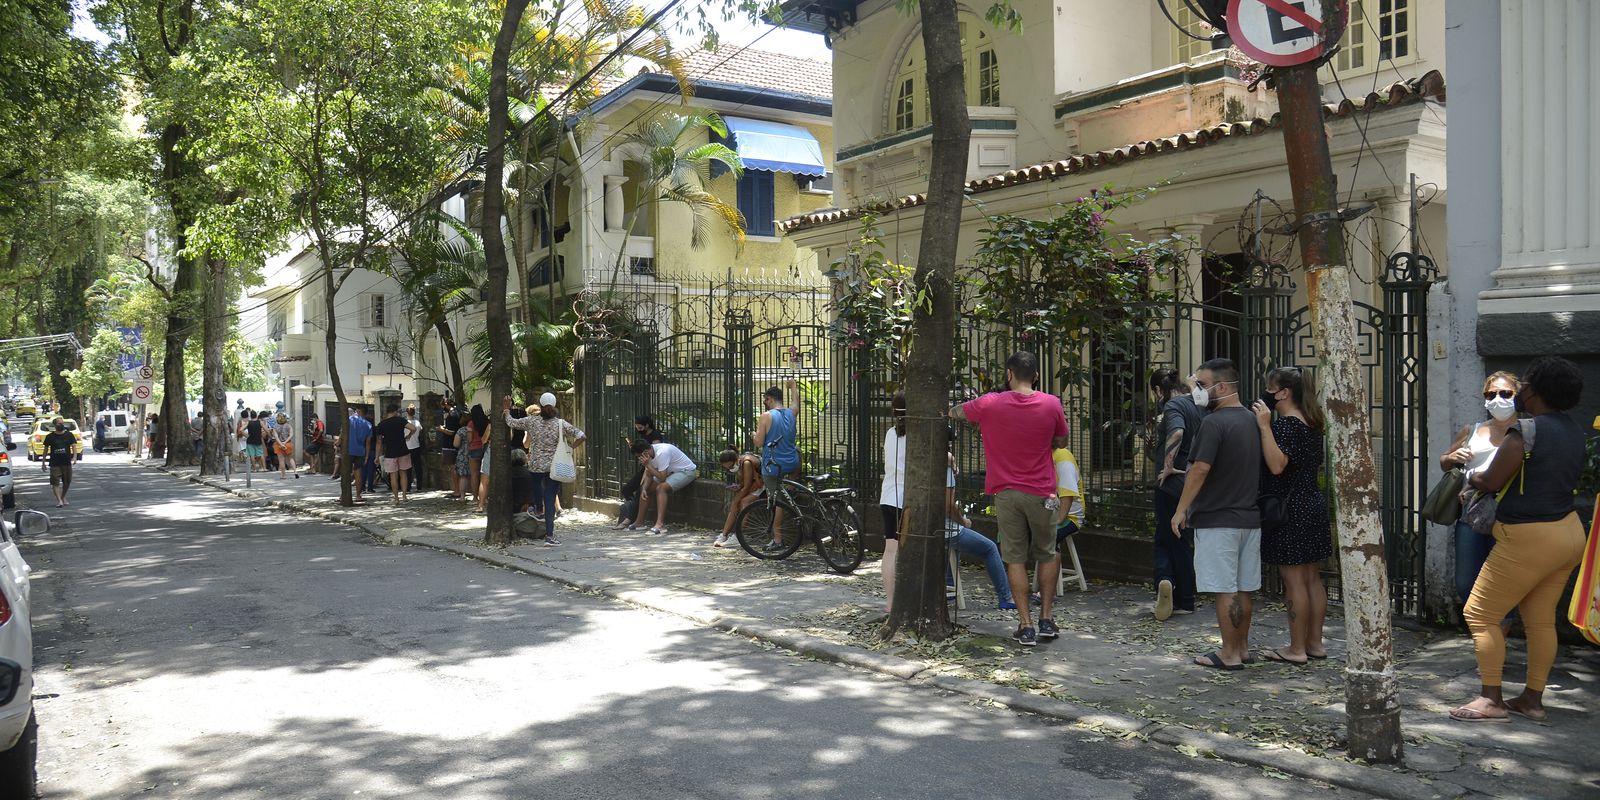 Posto de testagem Covid-19 no Centro Municipal de Saúde Manoel José Ferreira, zona sul do Rio de Janeiro, apresenta filas